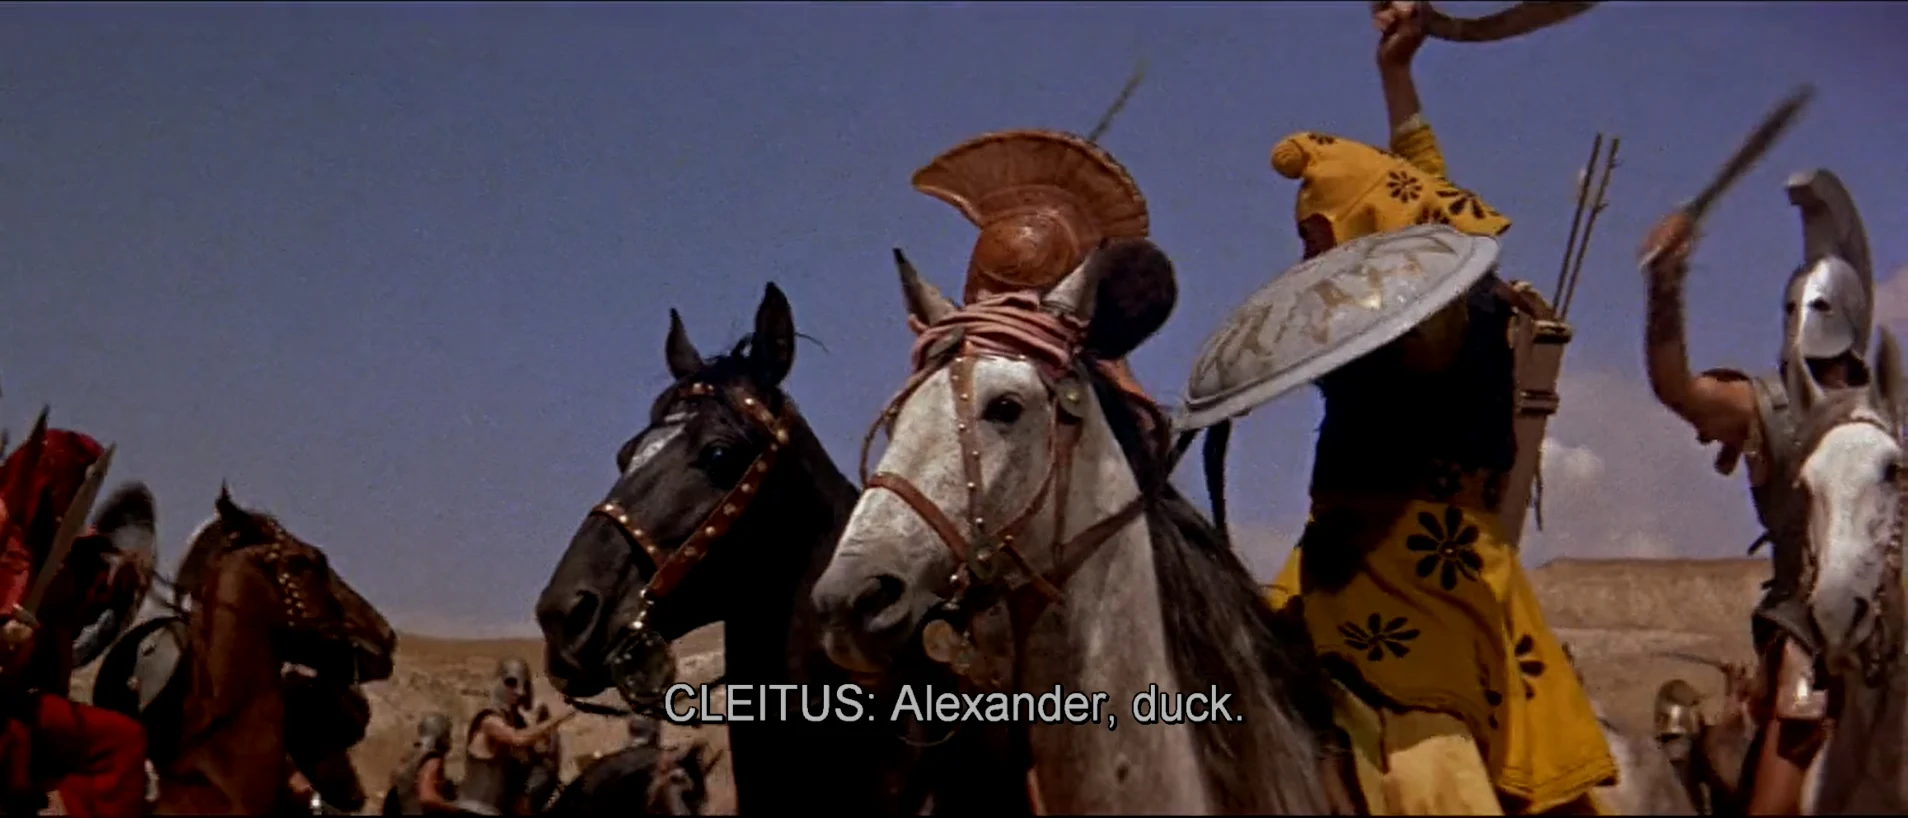 黑克莱图斯救了亚历山大一命这一幕也被拍了出来